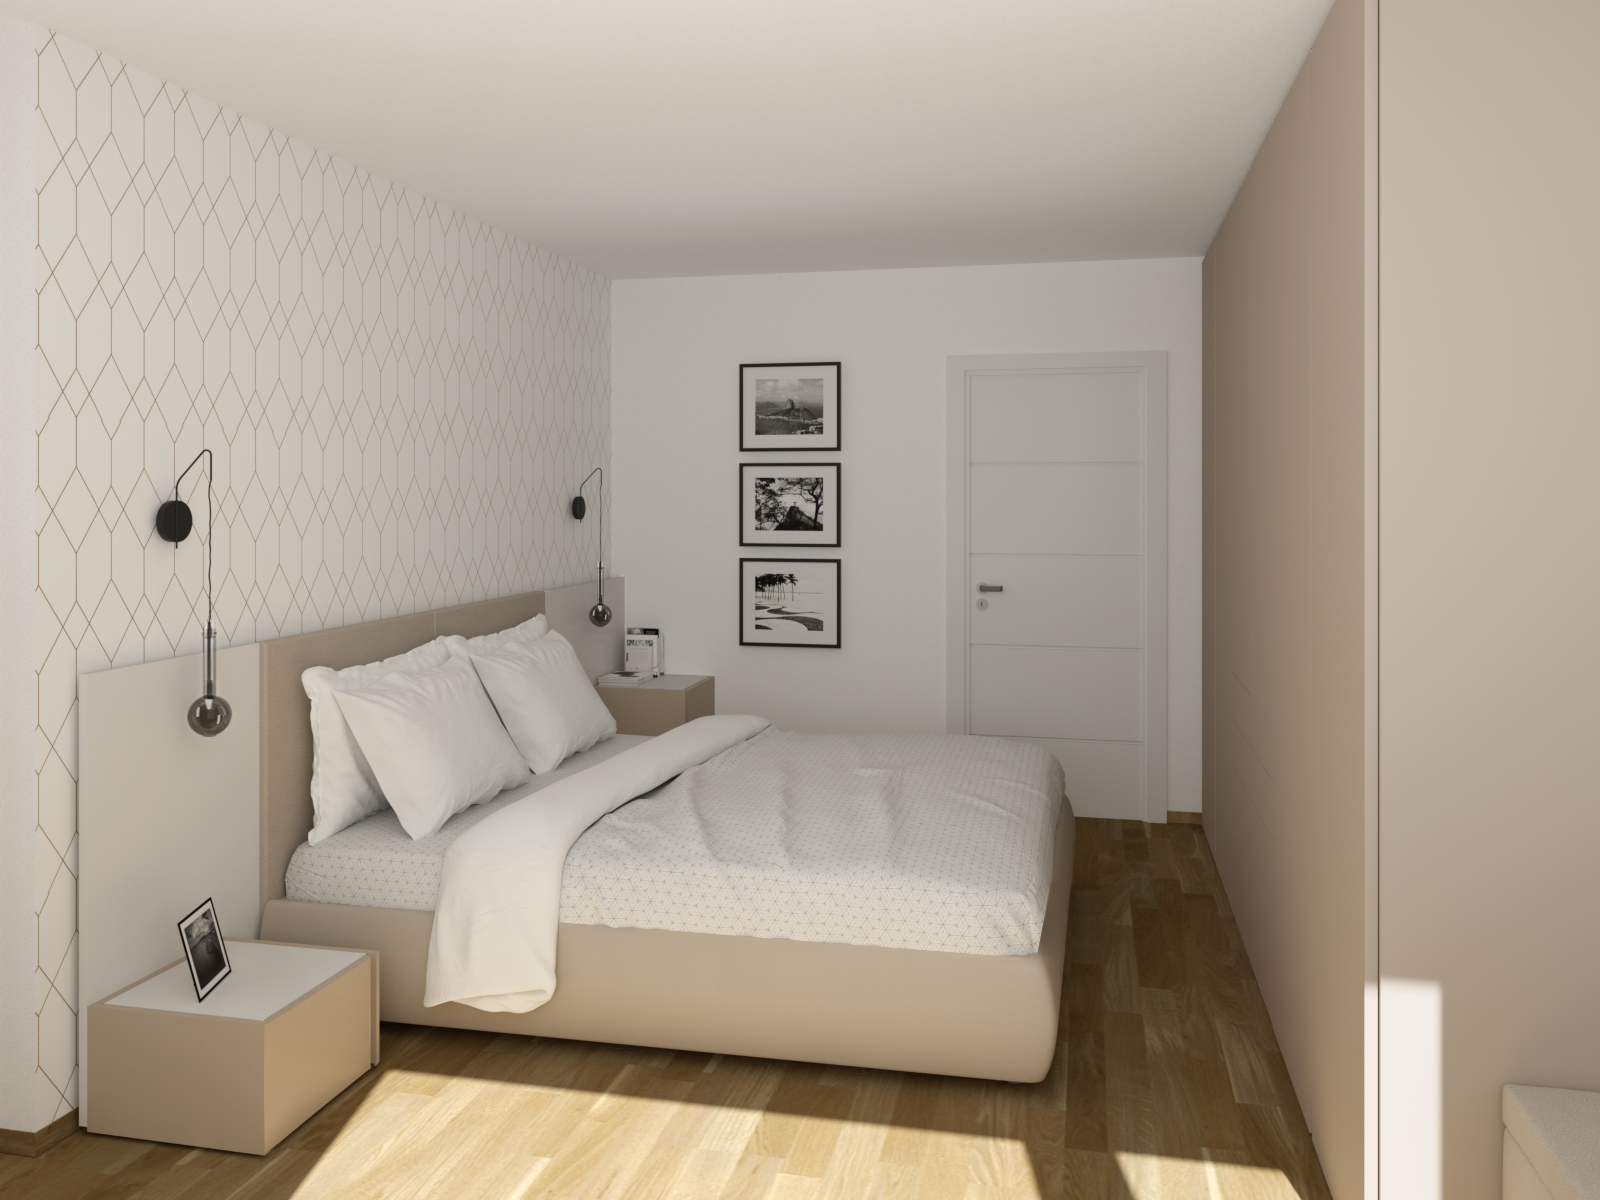 Idee - Idee salvaspazio #1: arredamento camera da letto e cameretta